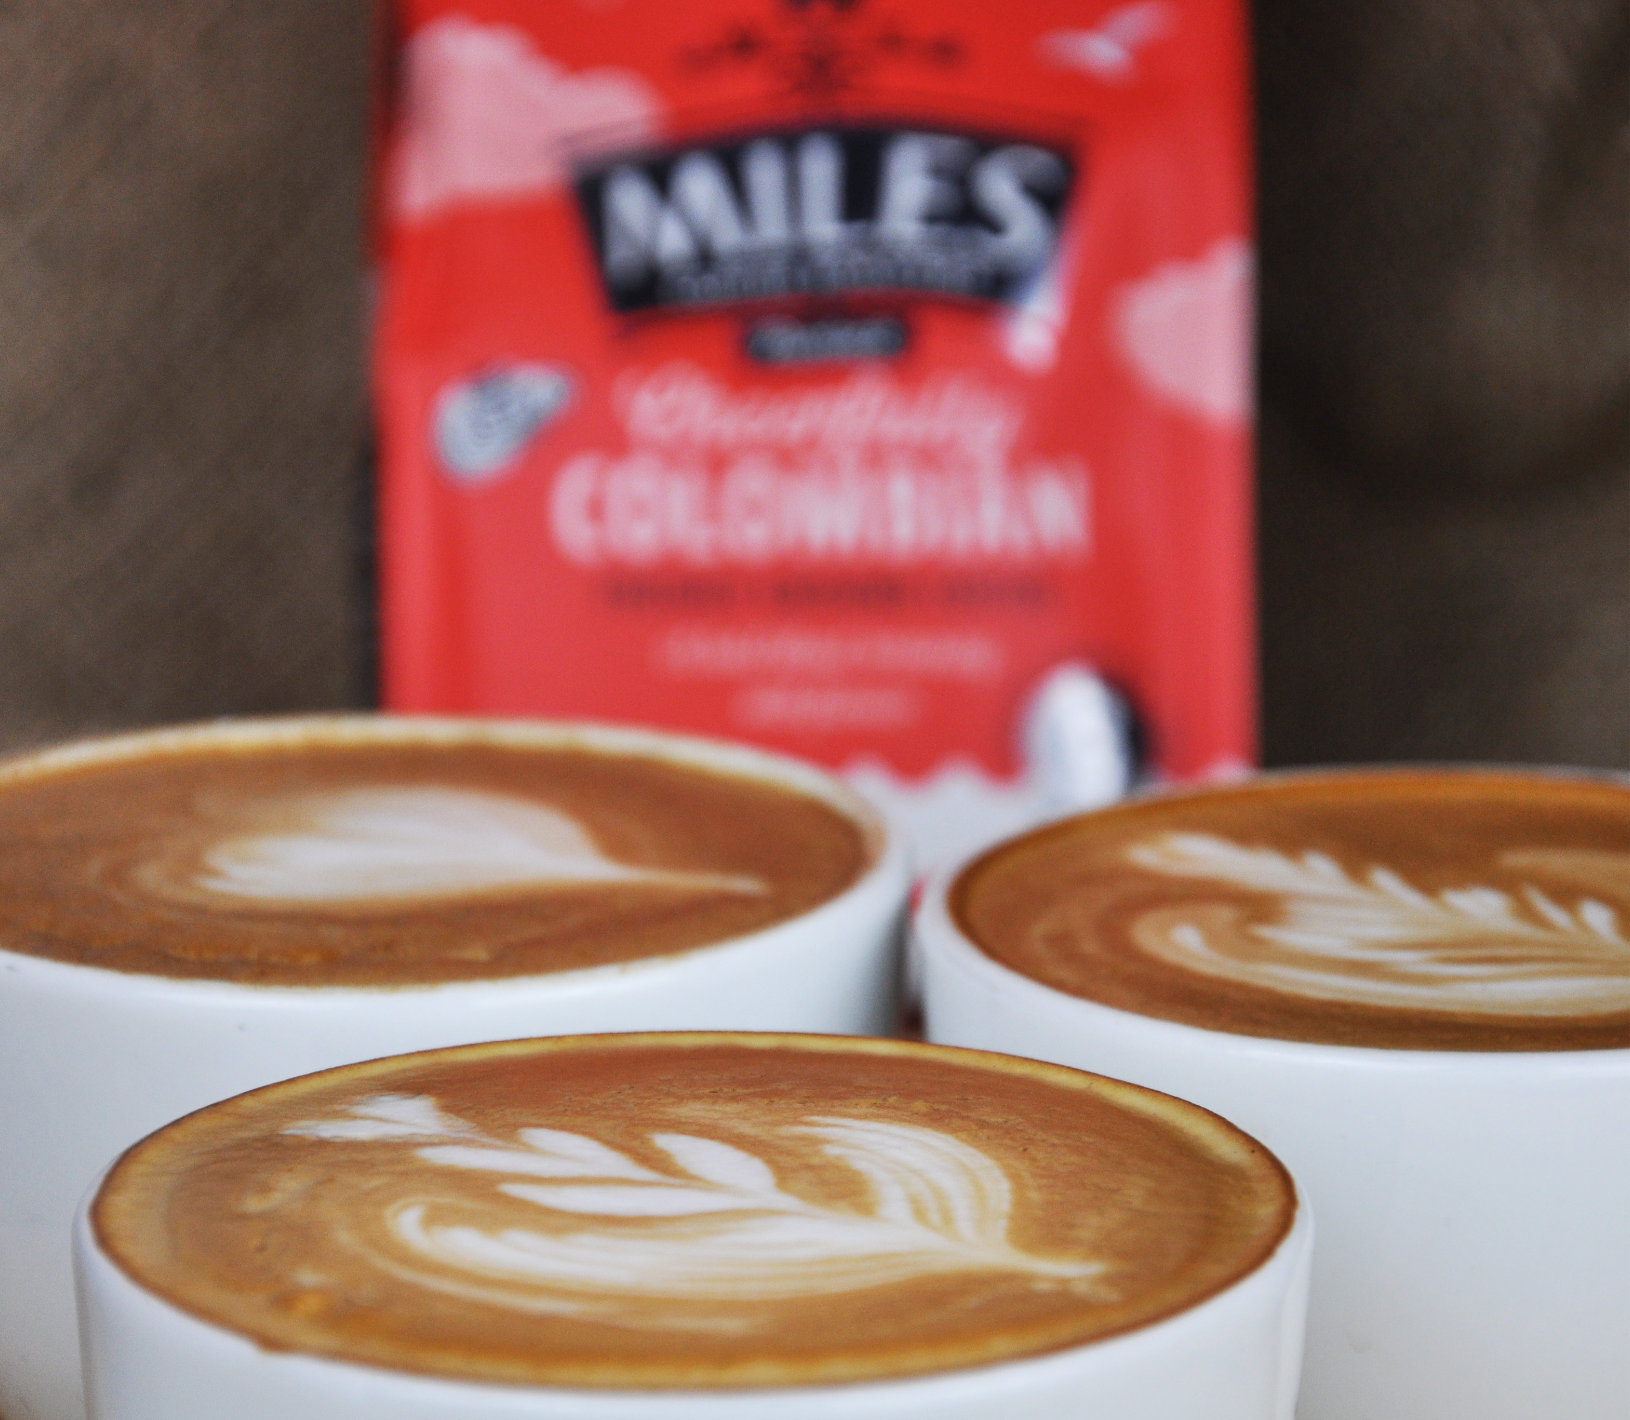 Miles tea coffee in mugs